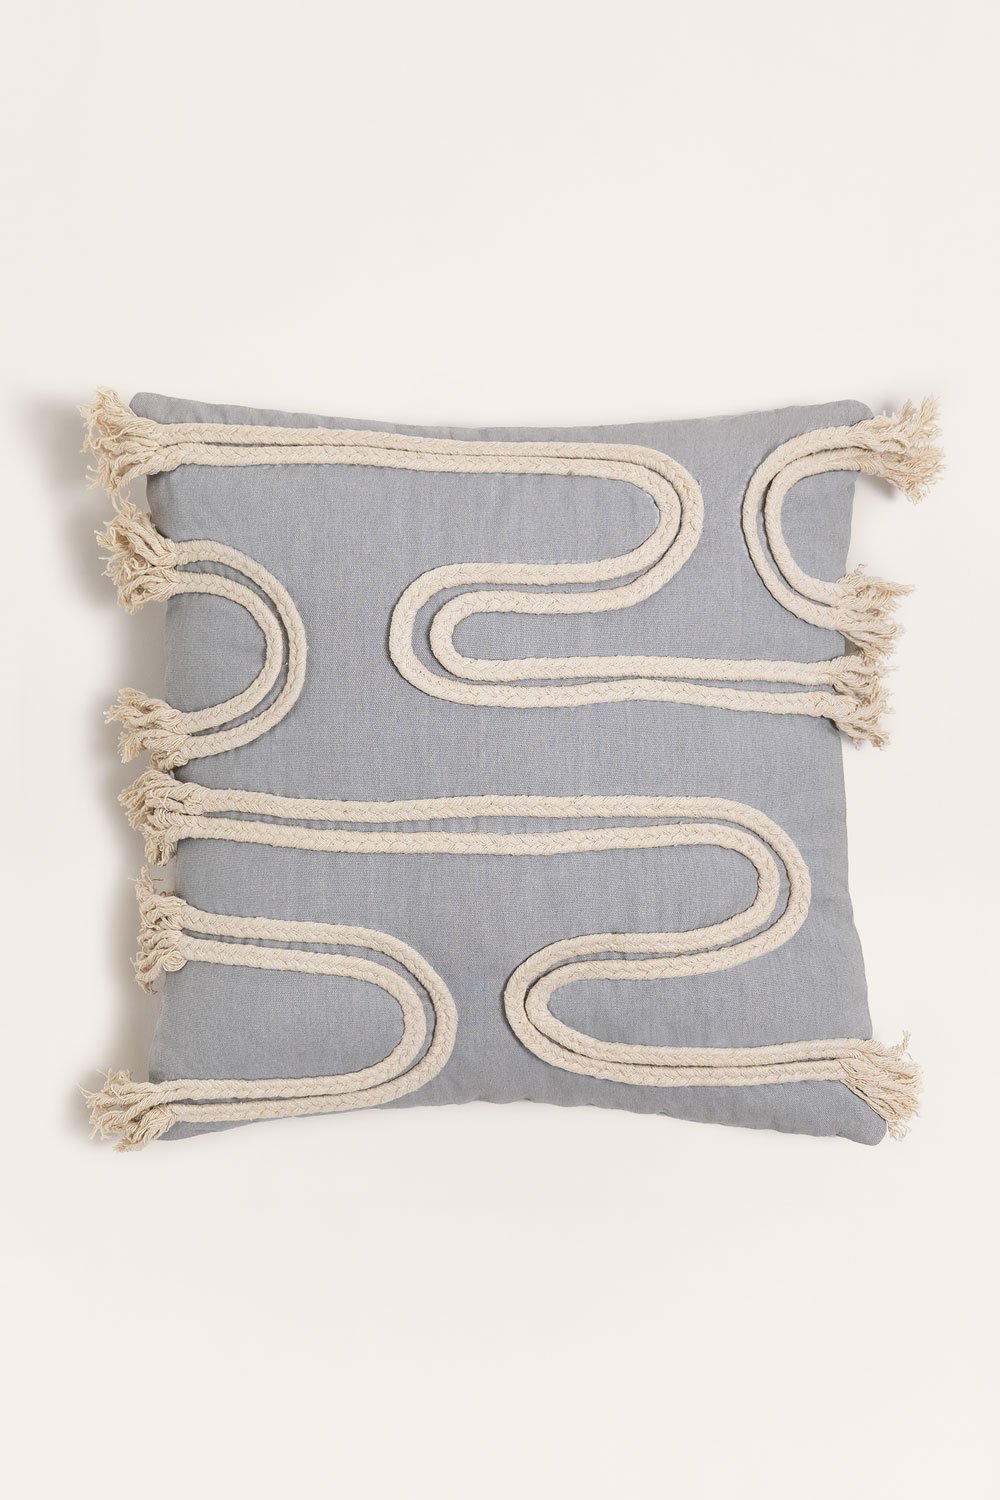 Cuscino quadrato in cotone (45x45 cm) Reni, immagine della galleria 1